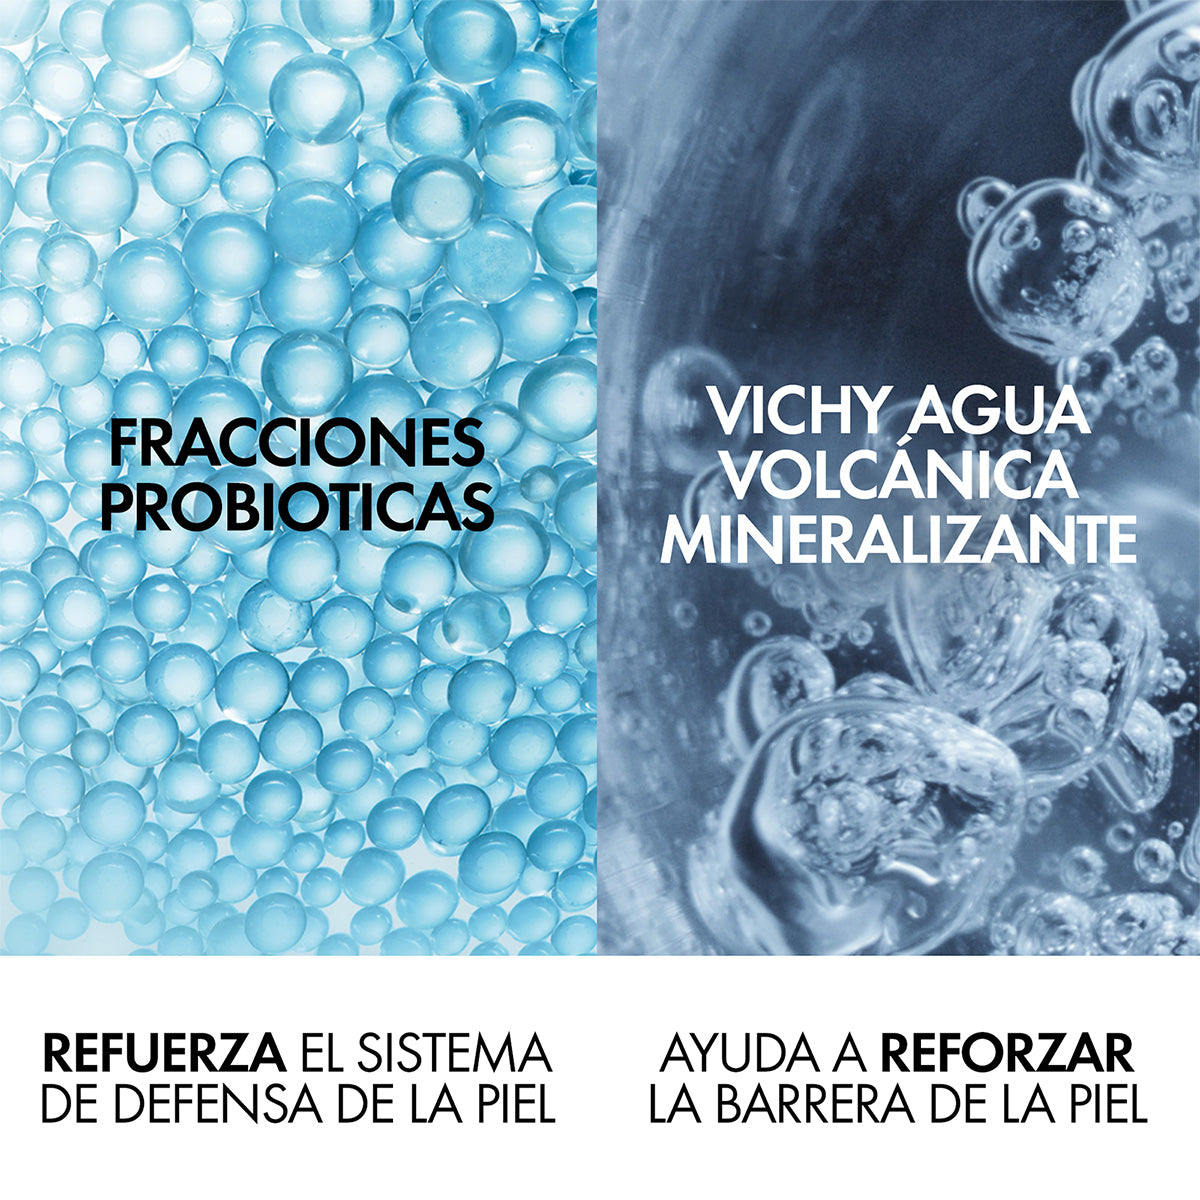 Vichy Mineral 89 Probiotic Fractions, Concentrado regenerador y reparador, 30ml.